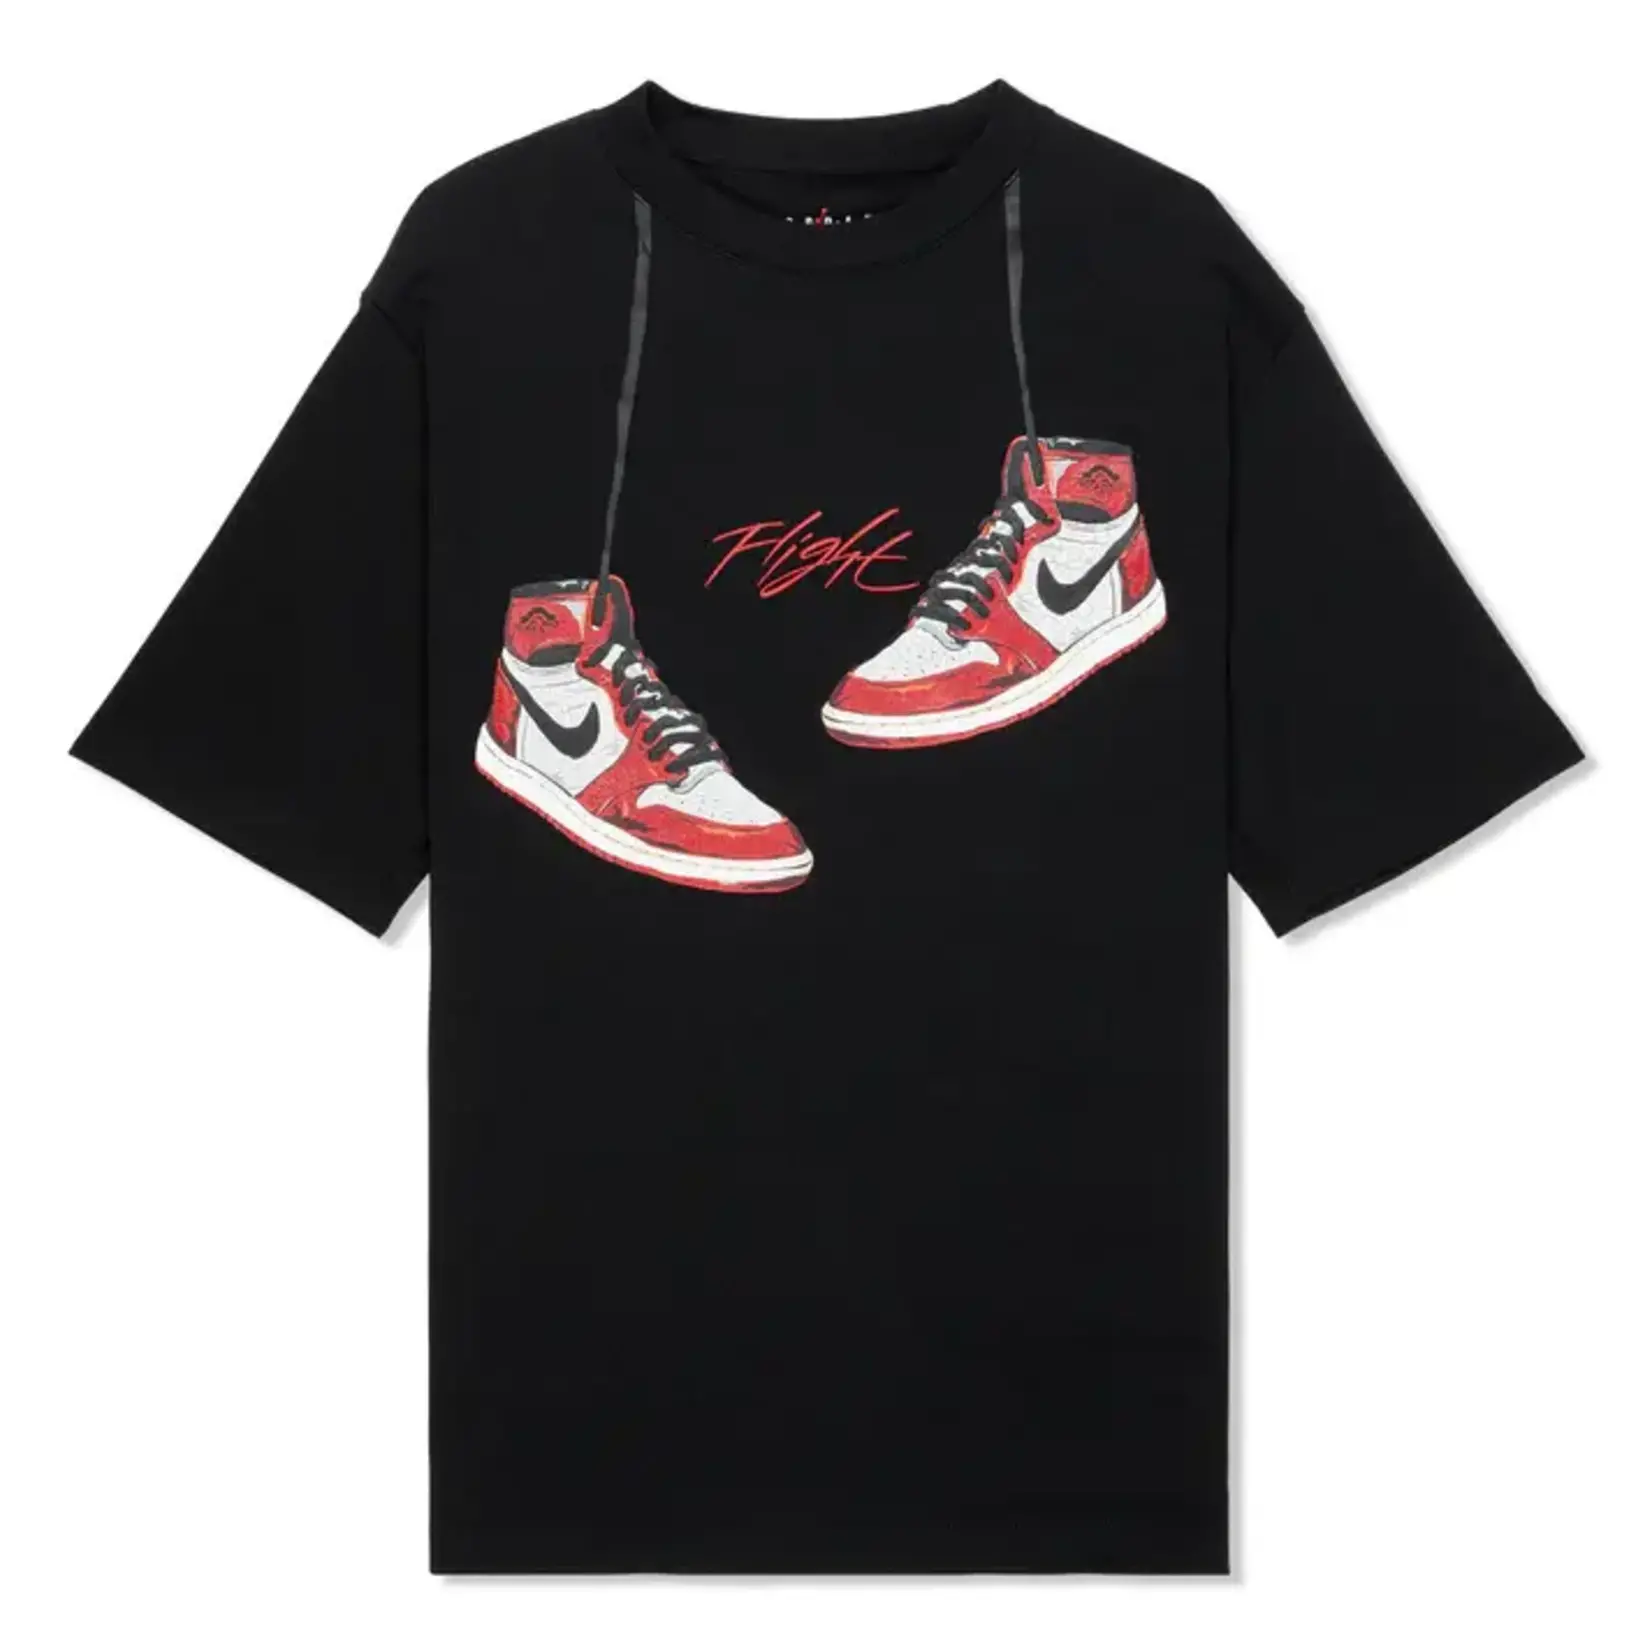 Nike Nike Air Jordan Men's Jordan 1985 Flight T-Shirt Black Size Large, DS BRAND NEW